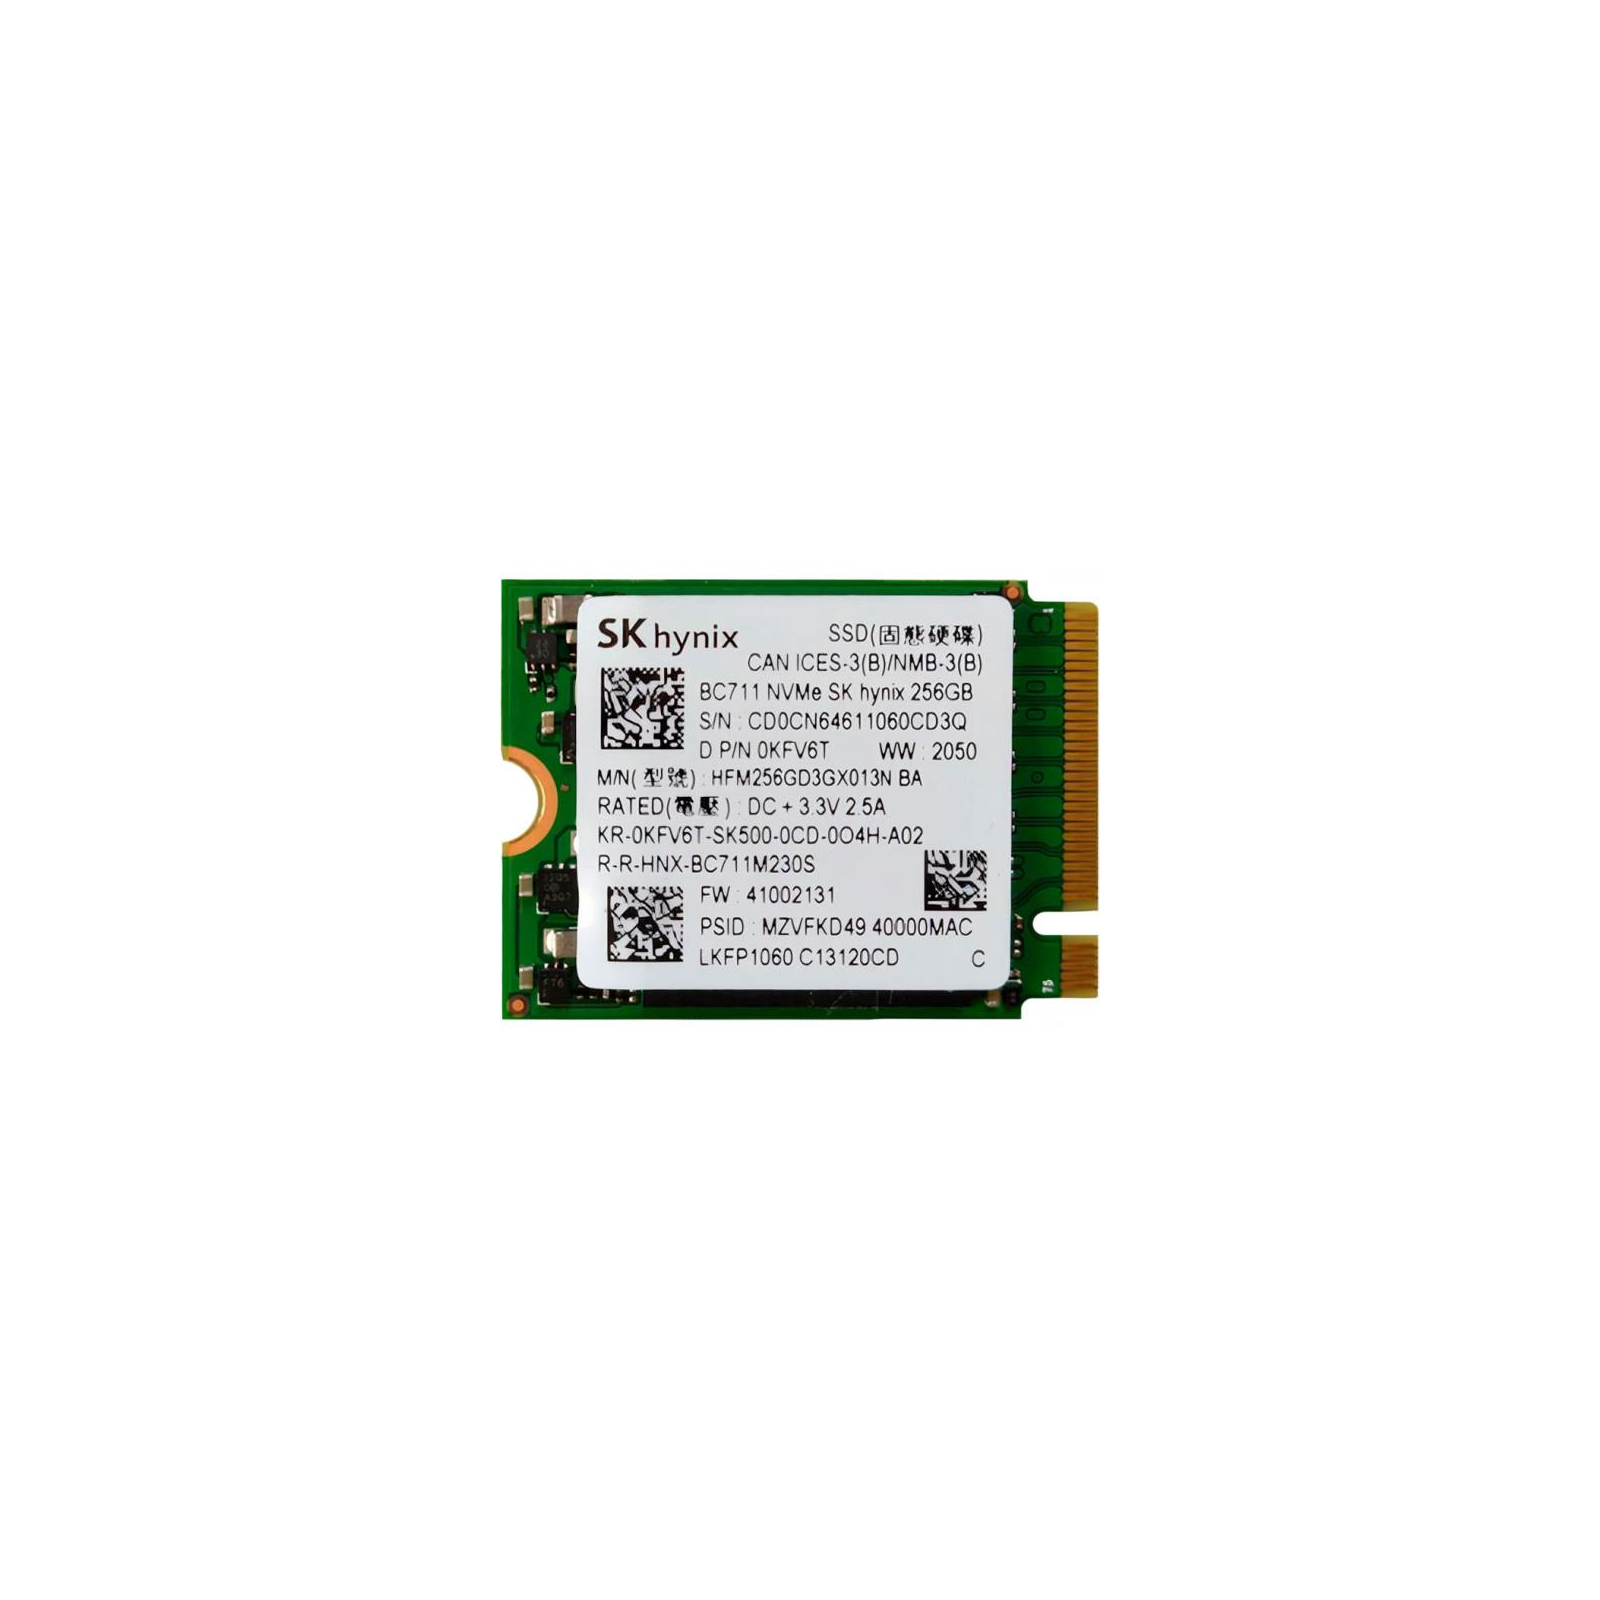 Накопитель SSD M.2 2230 256GB Hynix (HFM256GD3GX013N)